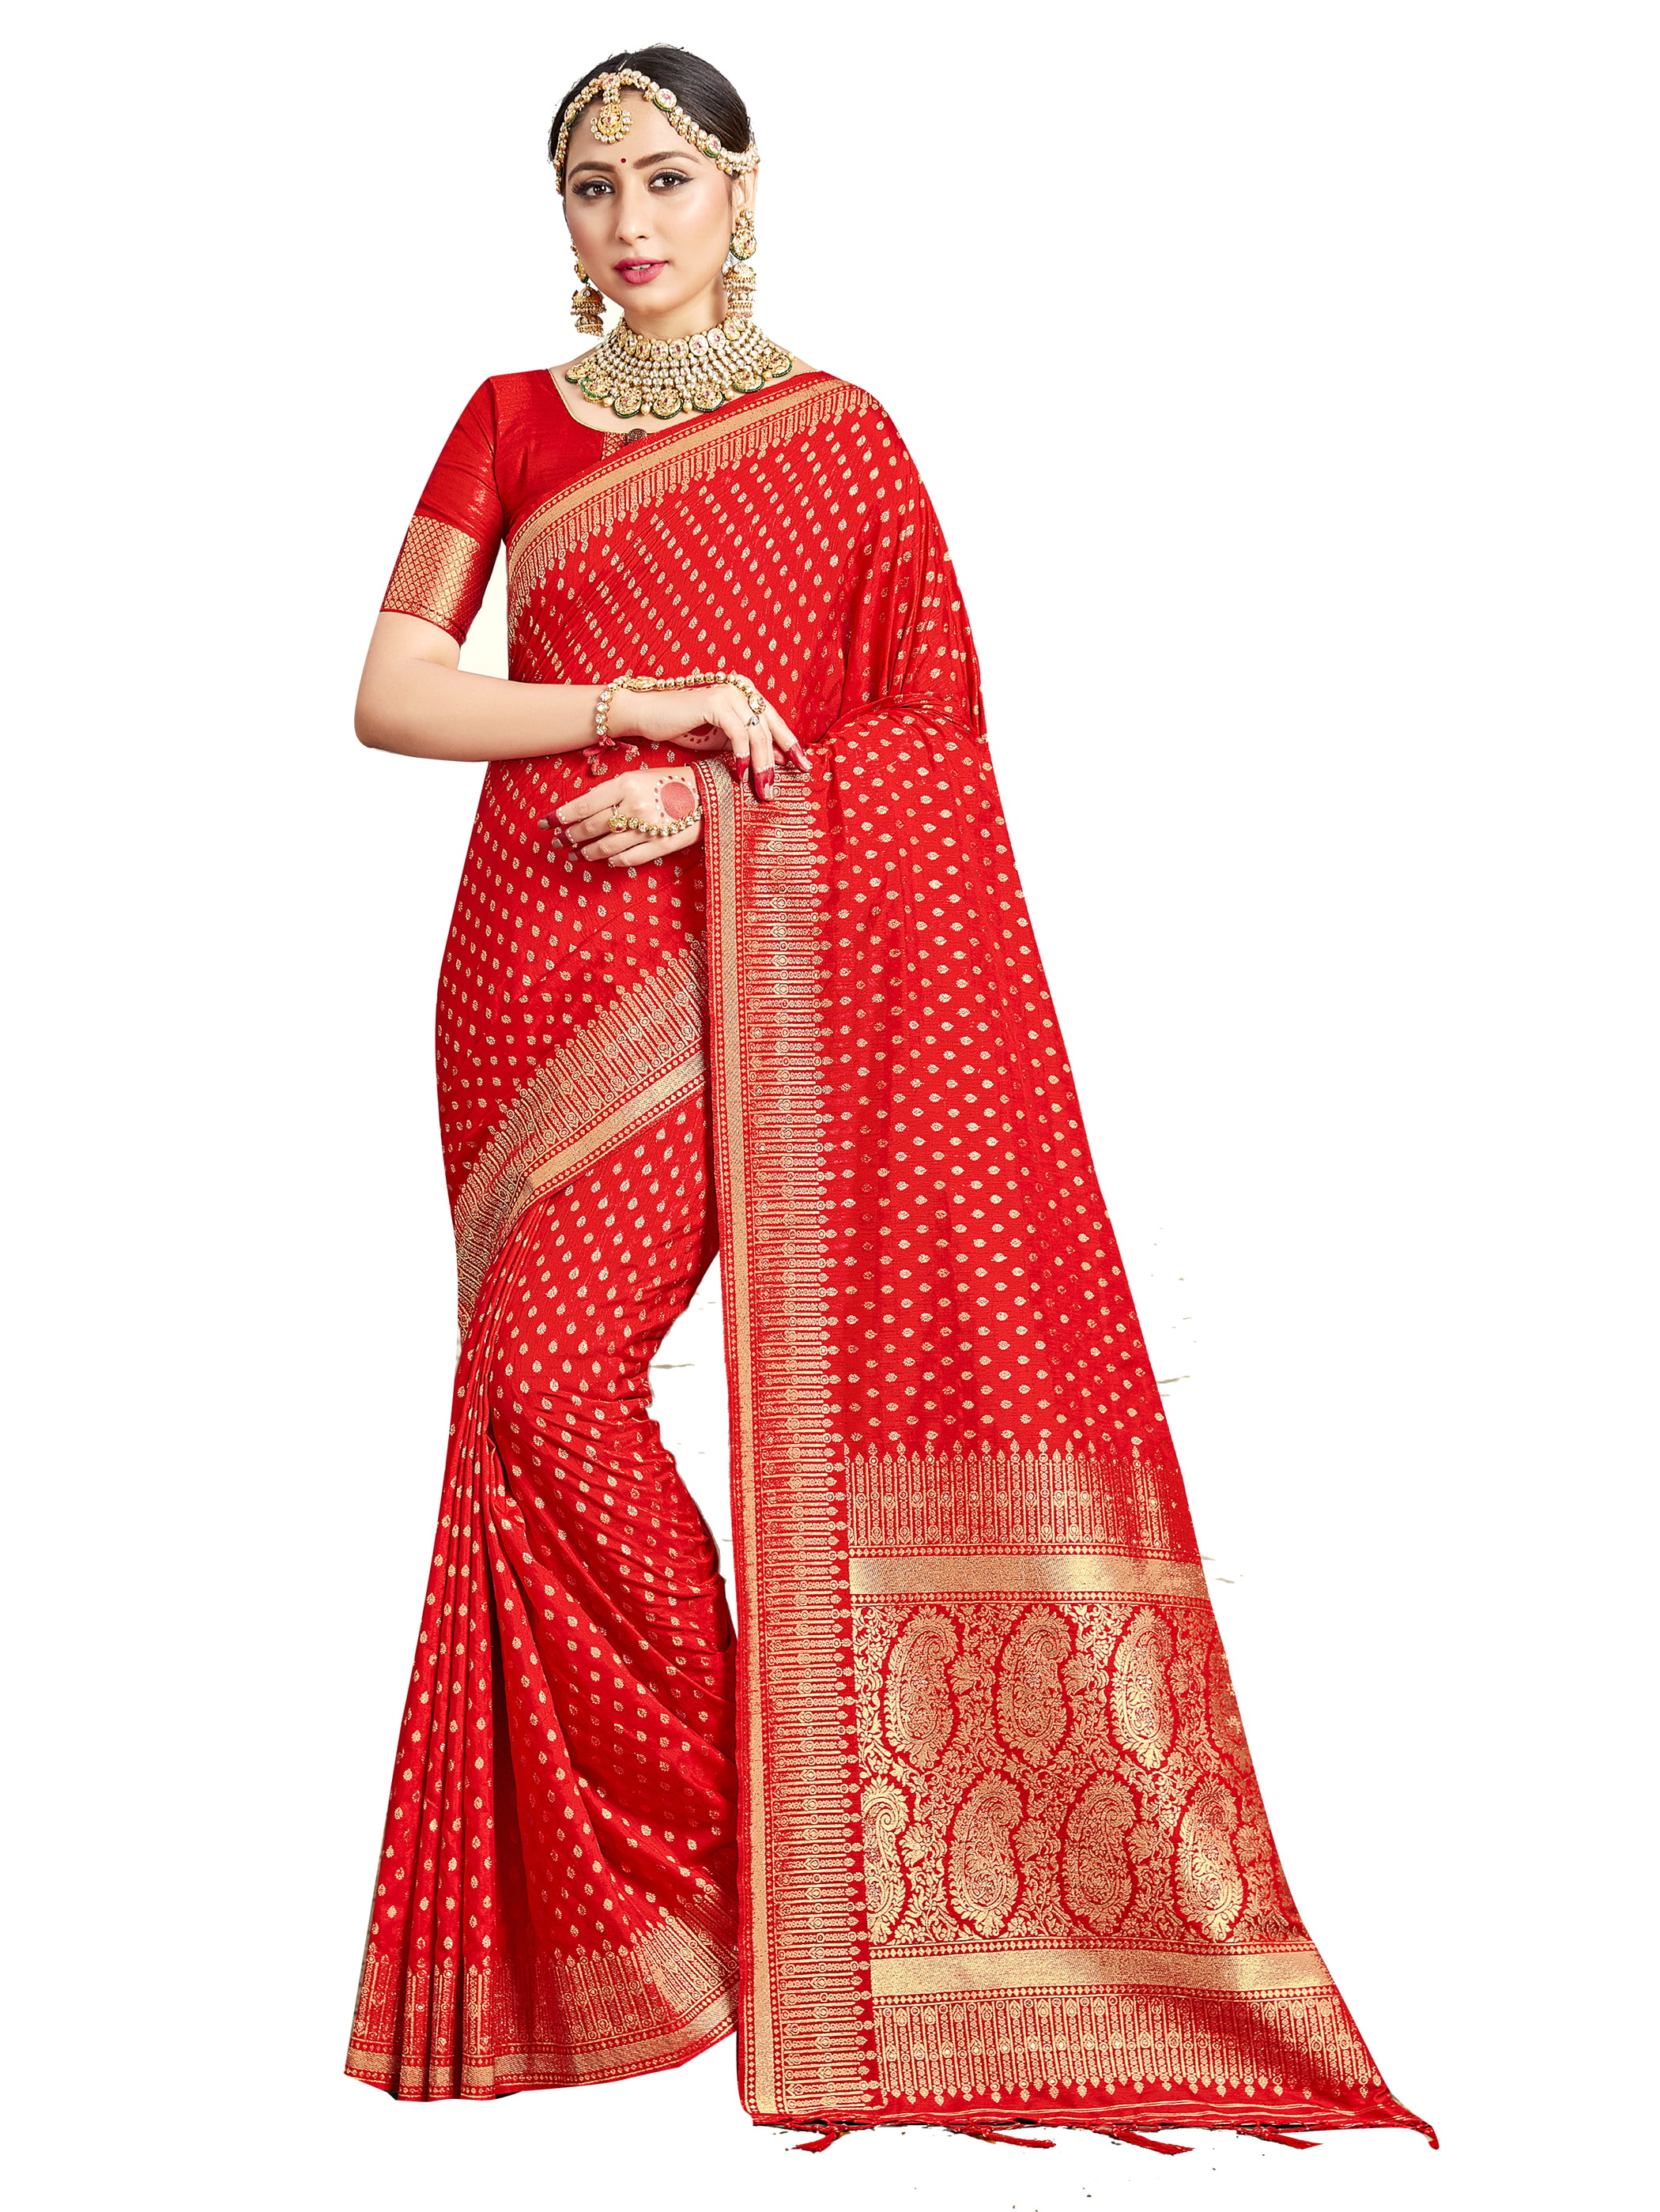 Sarees for Women Banarasi Kanjivaram Art Silk Woven Saree l Indian Ethnic Wedding Gift Sari with Unstitched Blouse